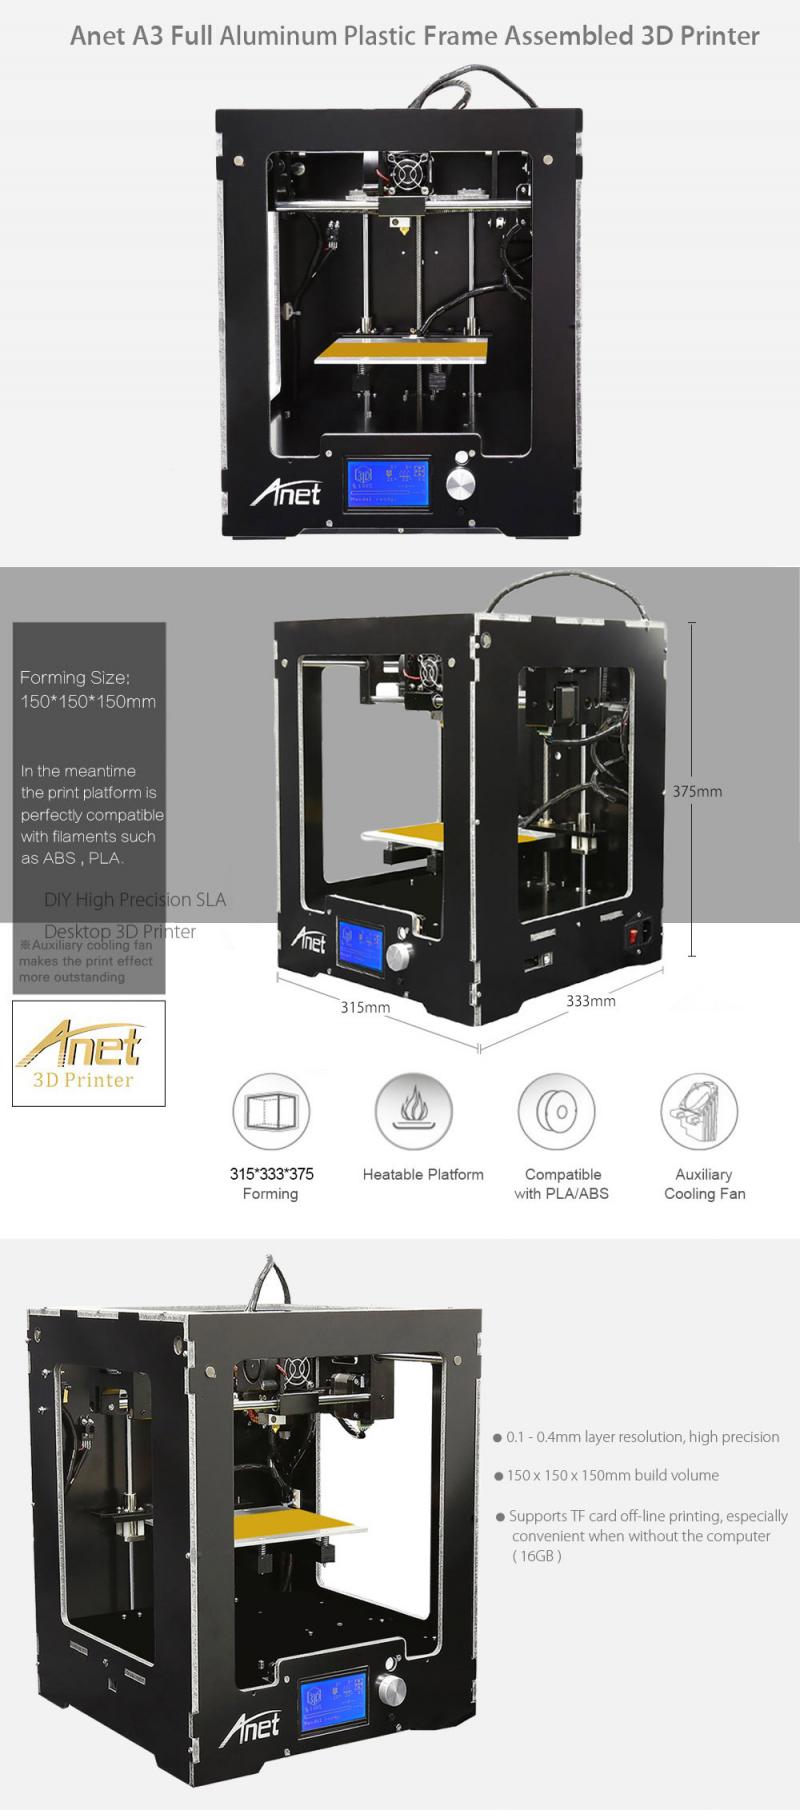 Anet 3D printer